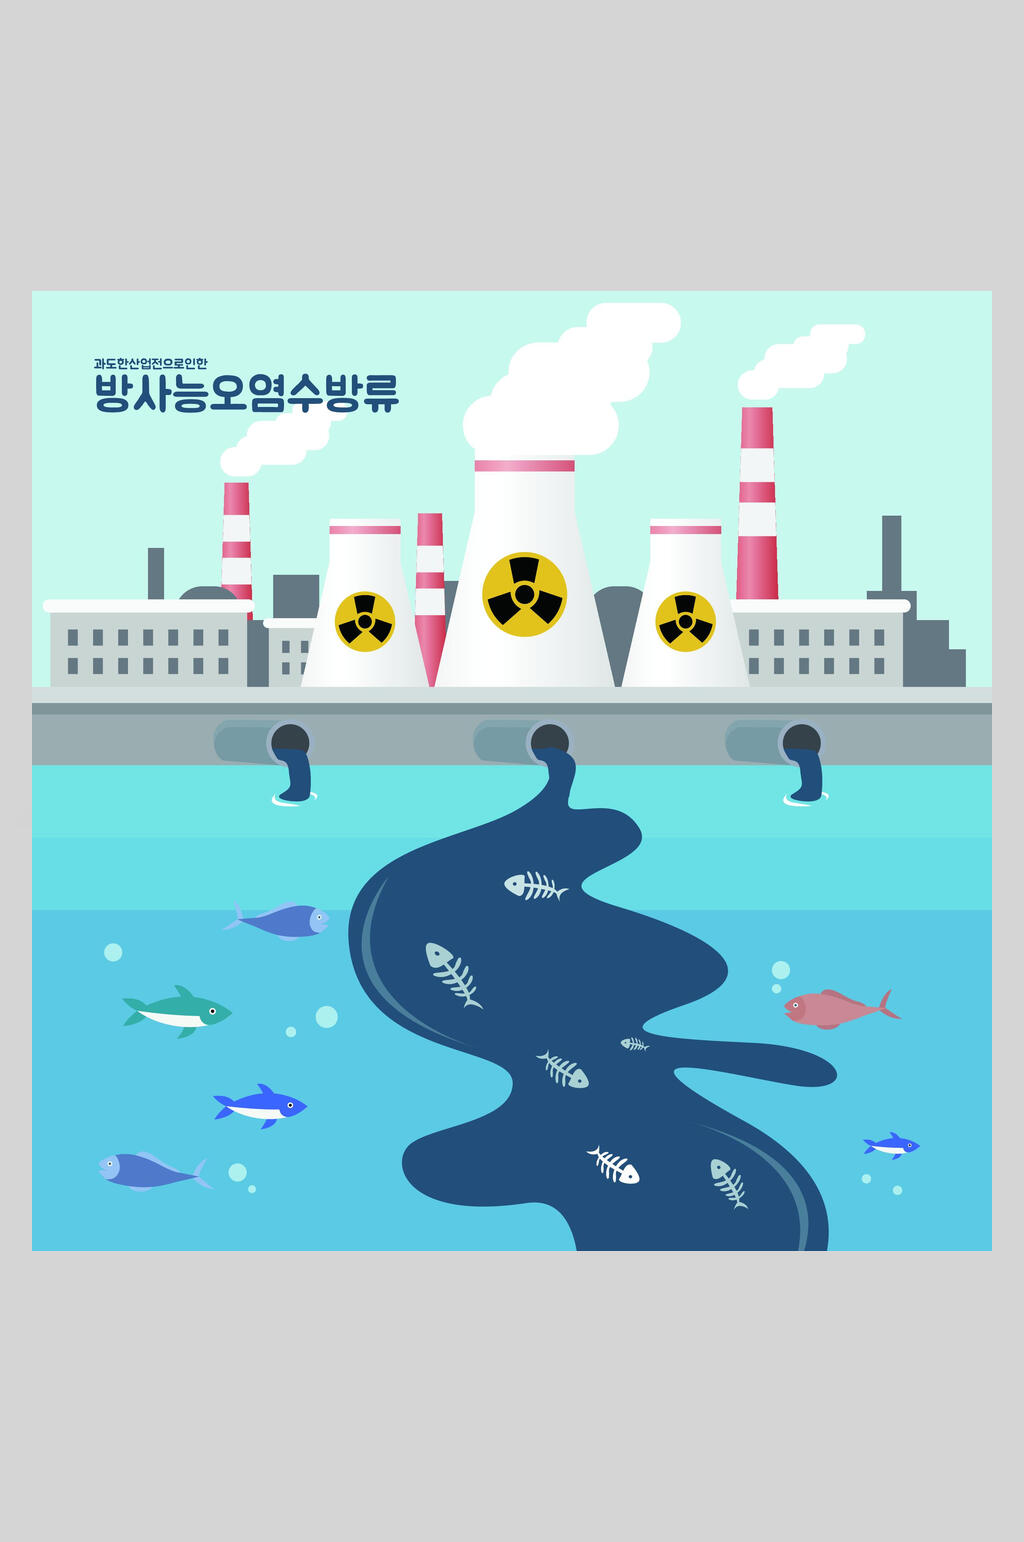 环境污染破坏主题插画海报